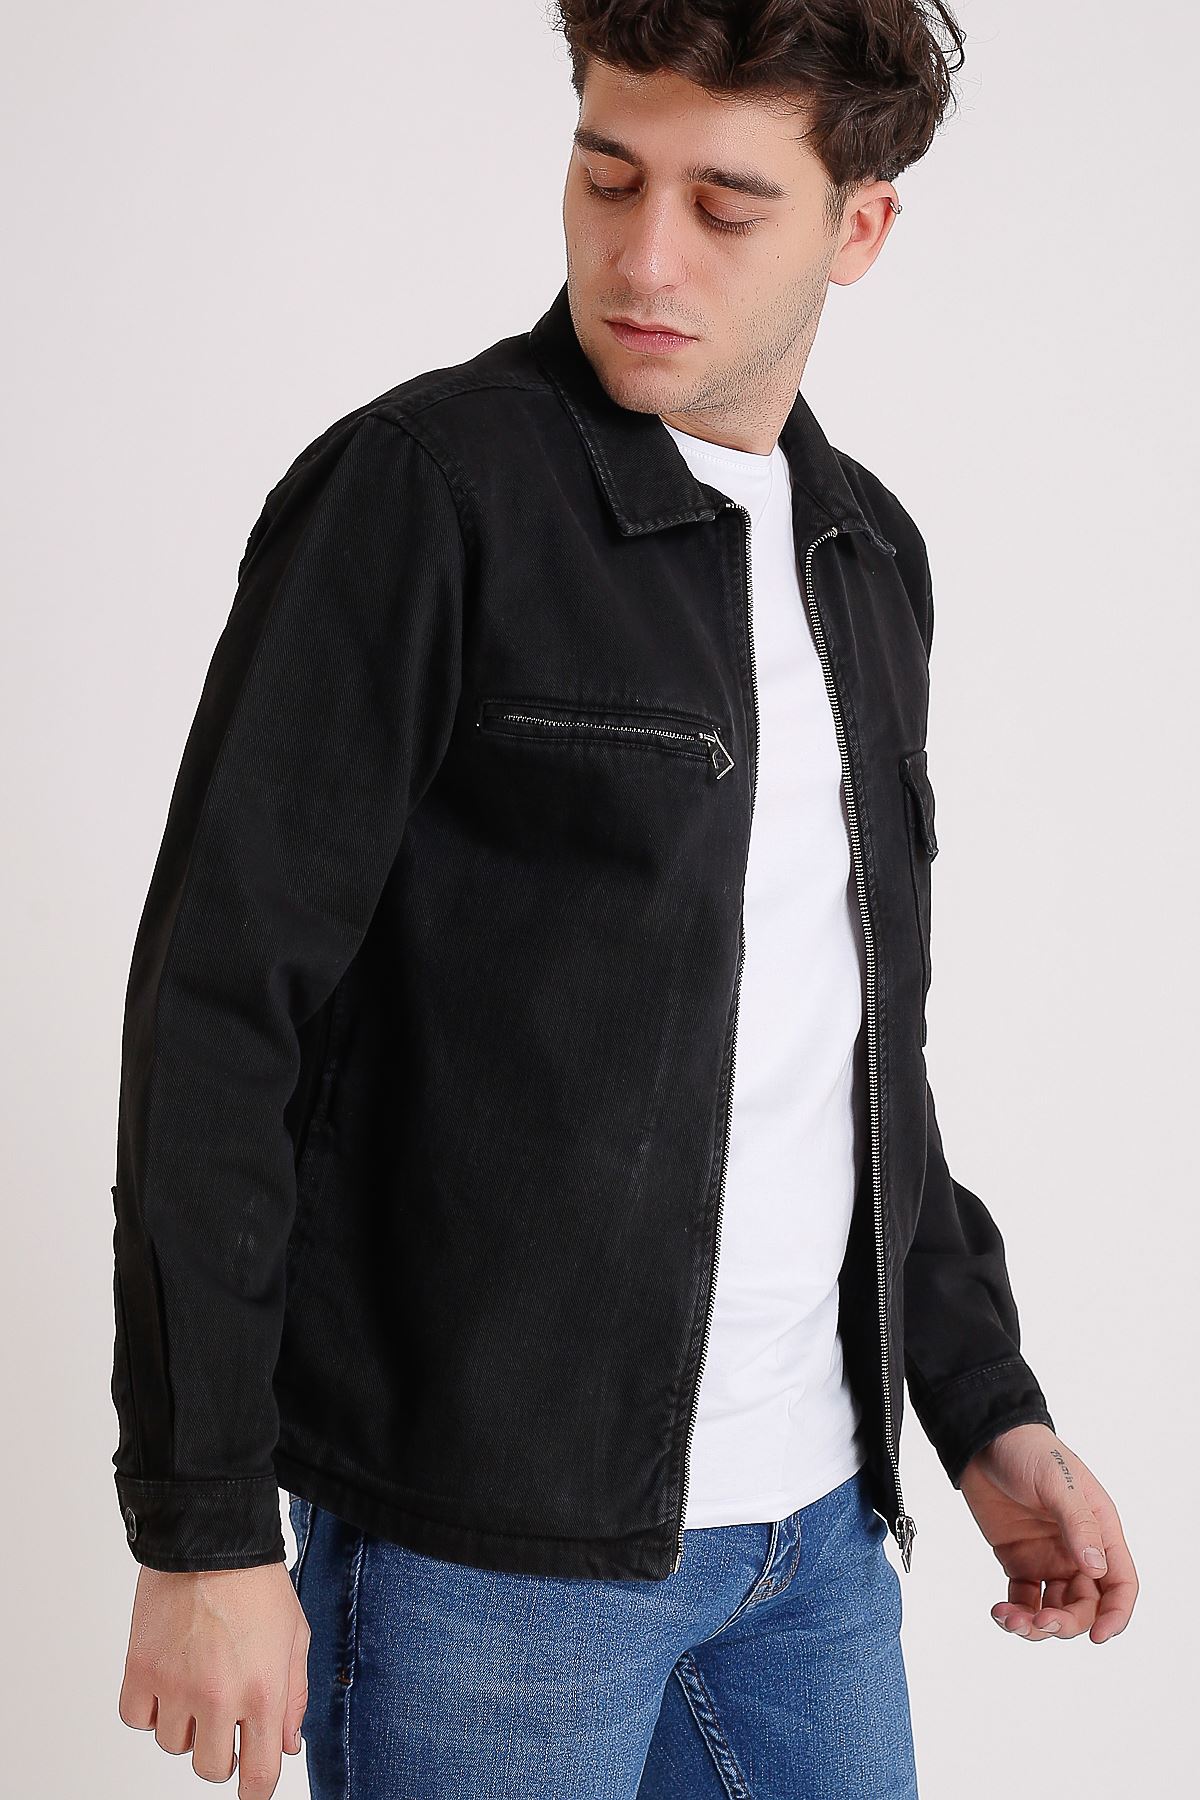 Premium Pamuklu Siyah Ceket Cep Fermuar Ve Detay Baskı